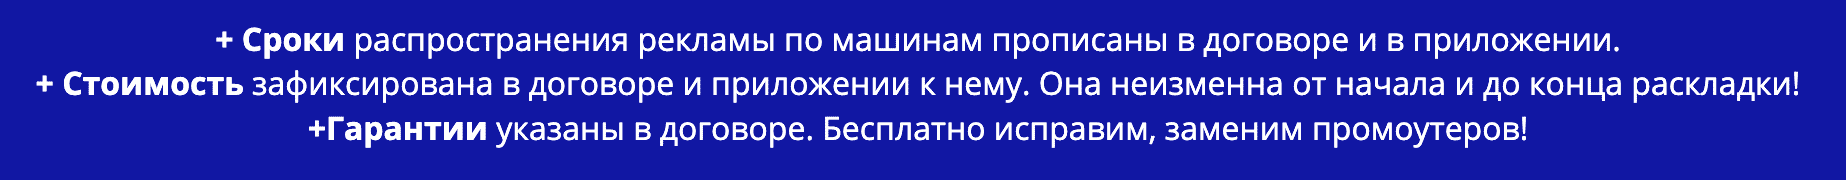 Преимущества распространения рекламы под дворники по договору Екатеринбург